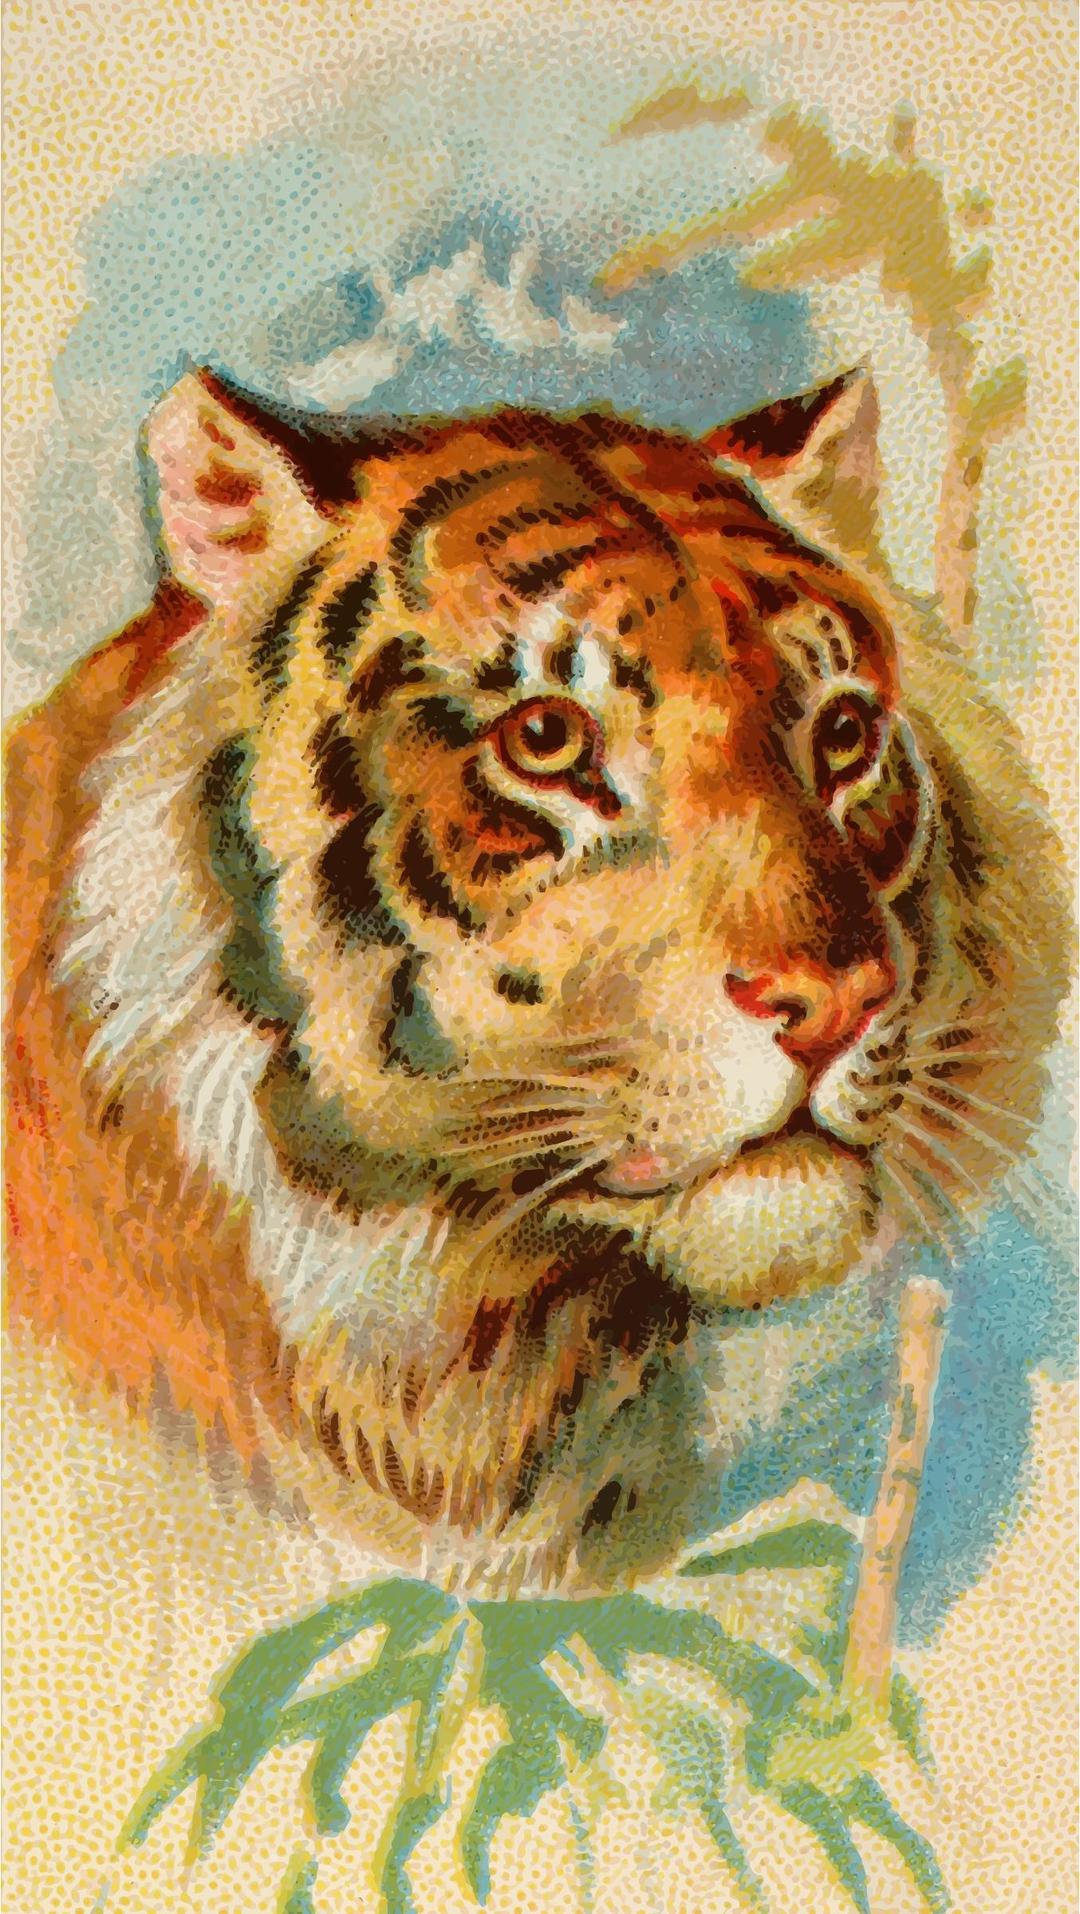 Cigarette card - Tiger png transparent